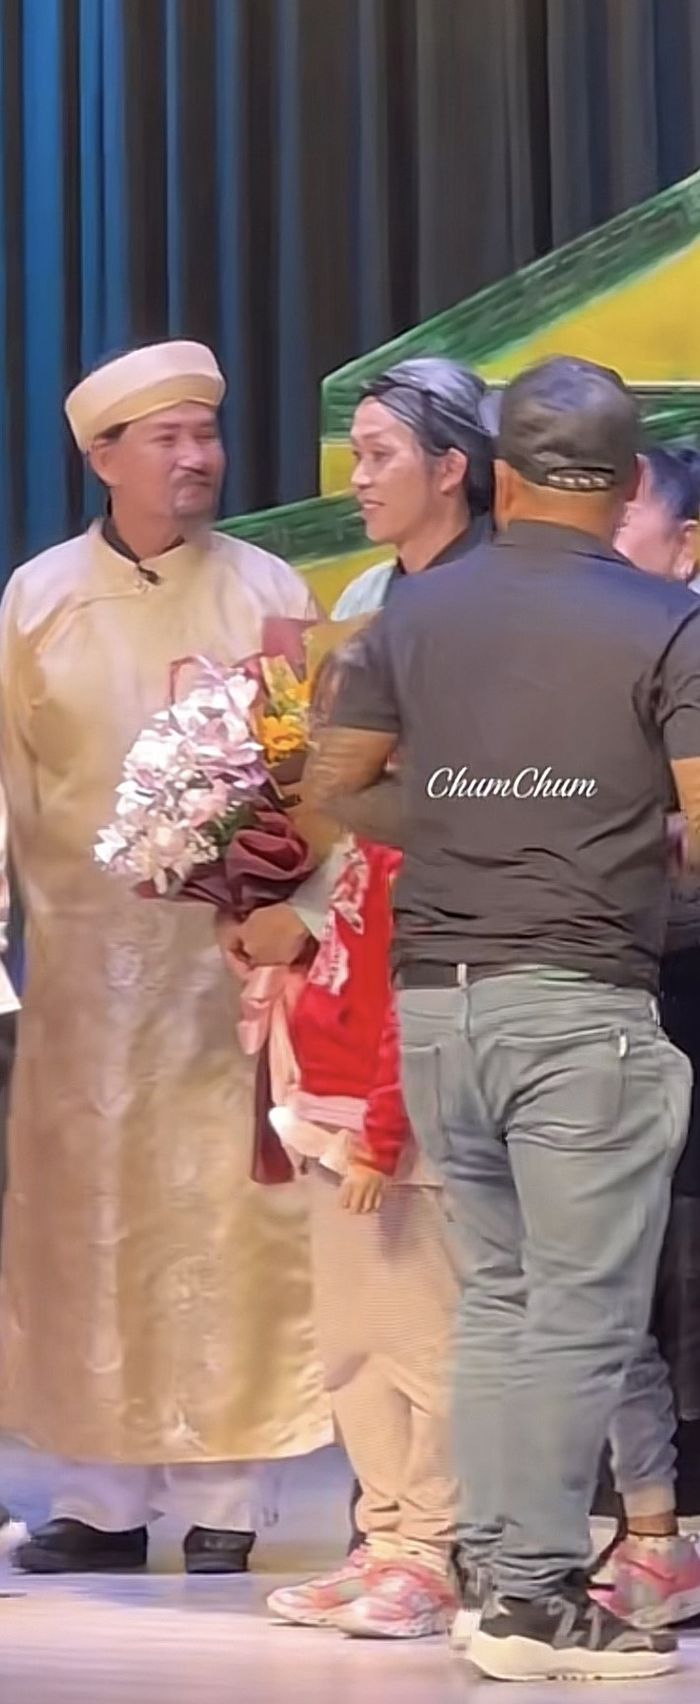 Hoài Linh nhận hoa mỏi tay, 2 nghệ sĩ gạo cội đứng cạnh bị bơ đẹp 